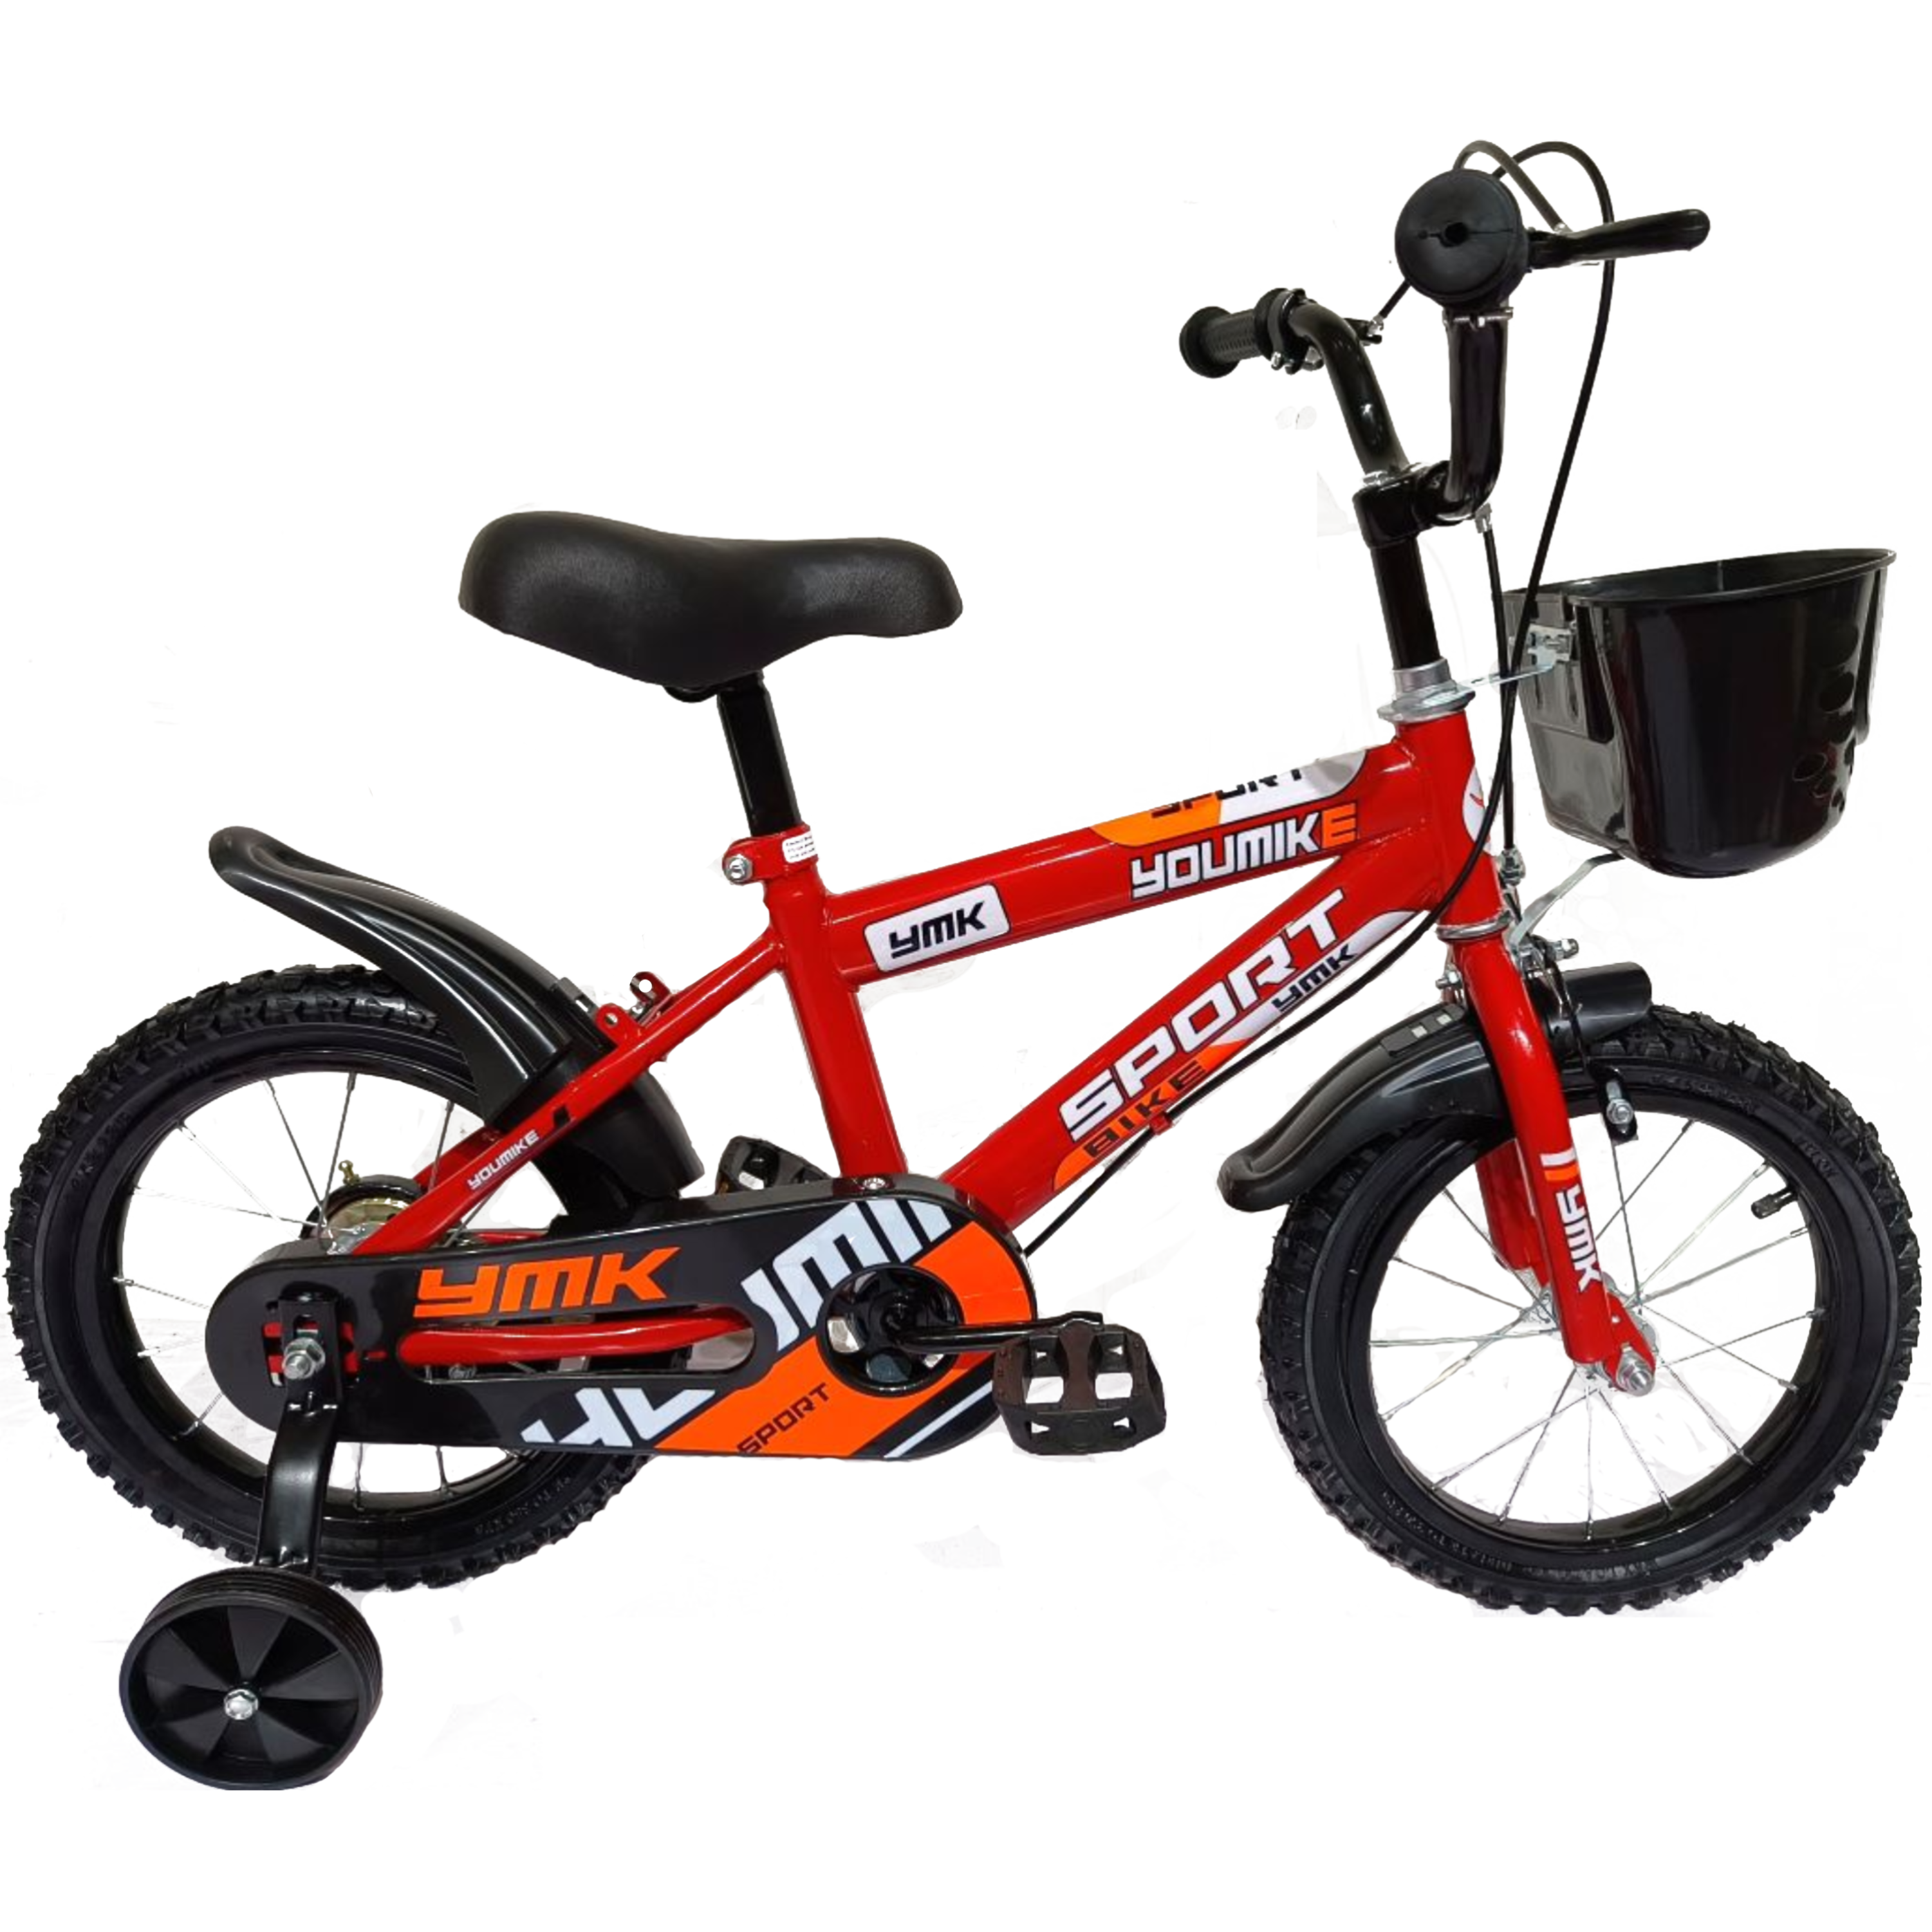 אופניים לילדים 12 אינץ Rosso Italy RSM-1023 - צבע אדום שנה אחריות ע